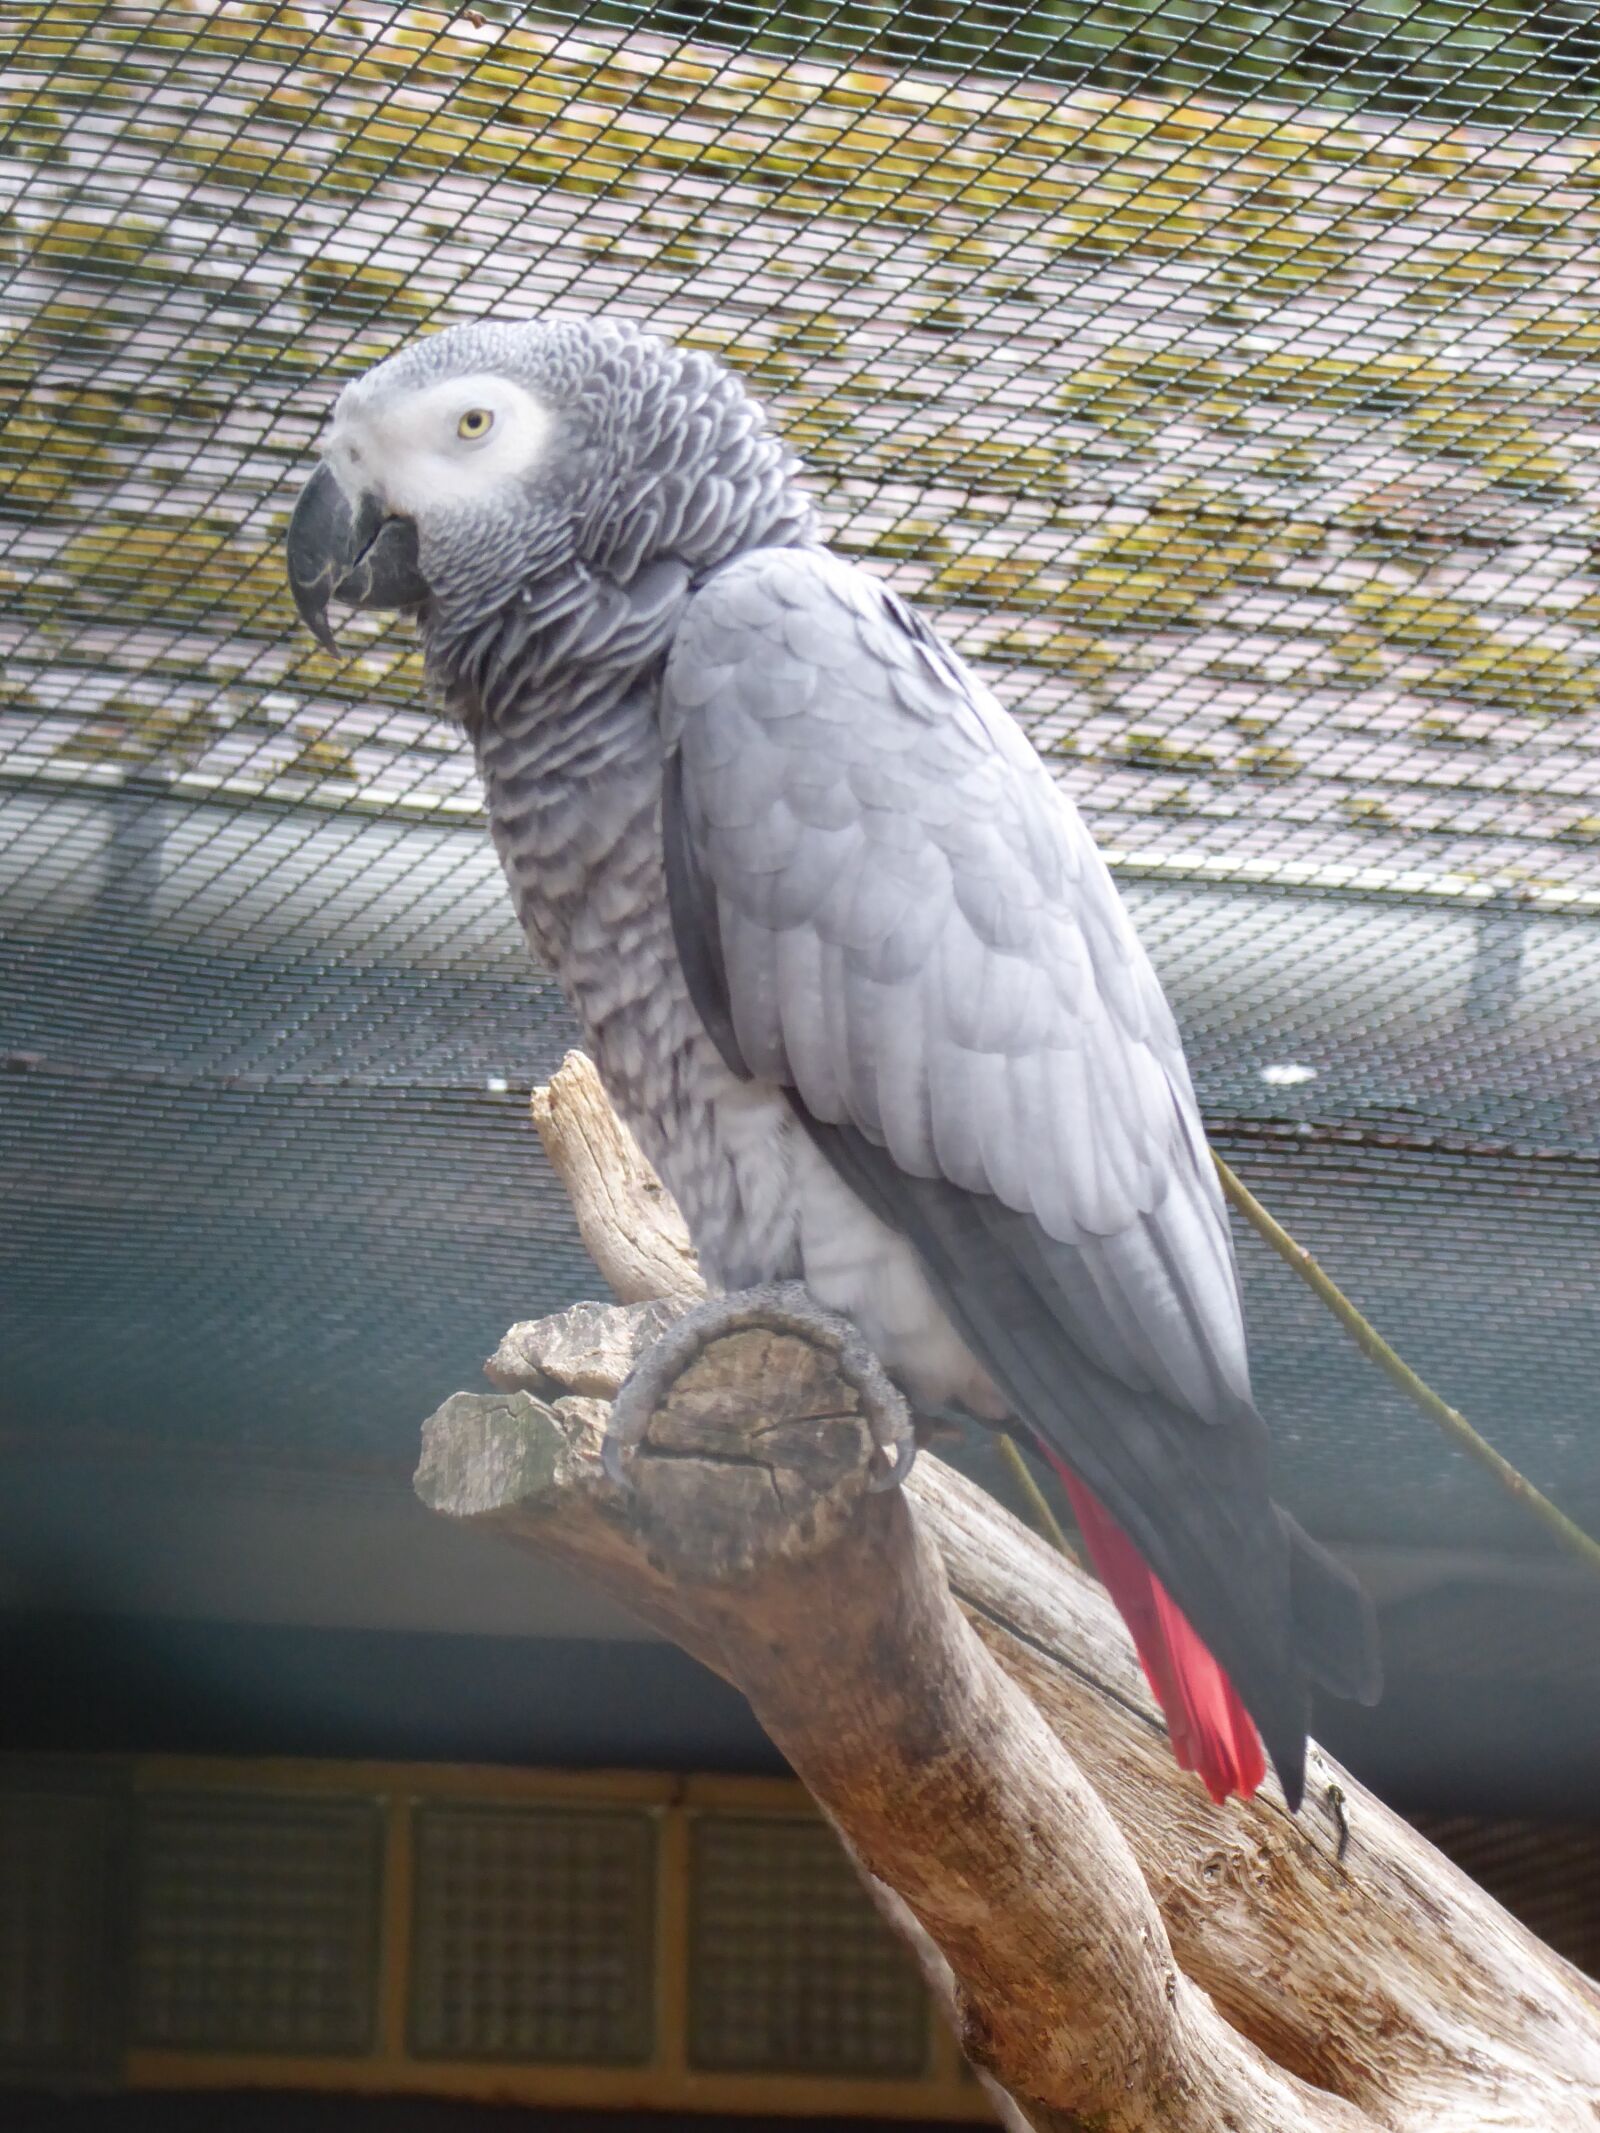 Panasonic DMC-TZ71 sample photo. African grey parrot, bird photography